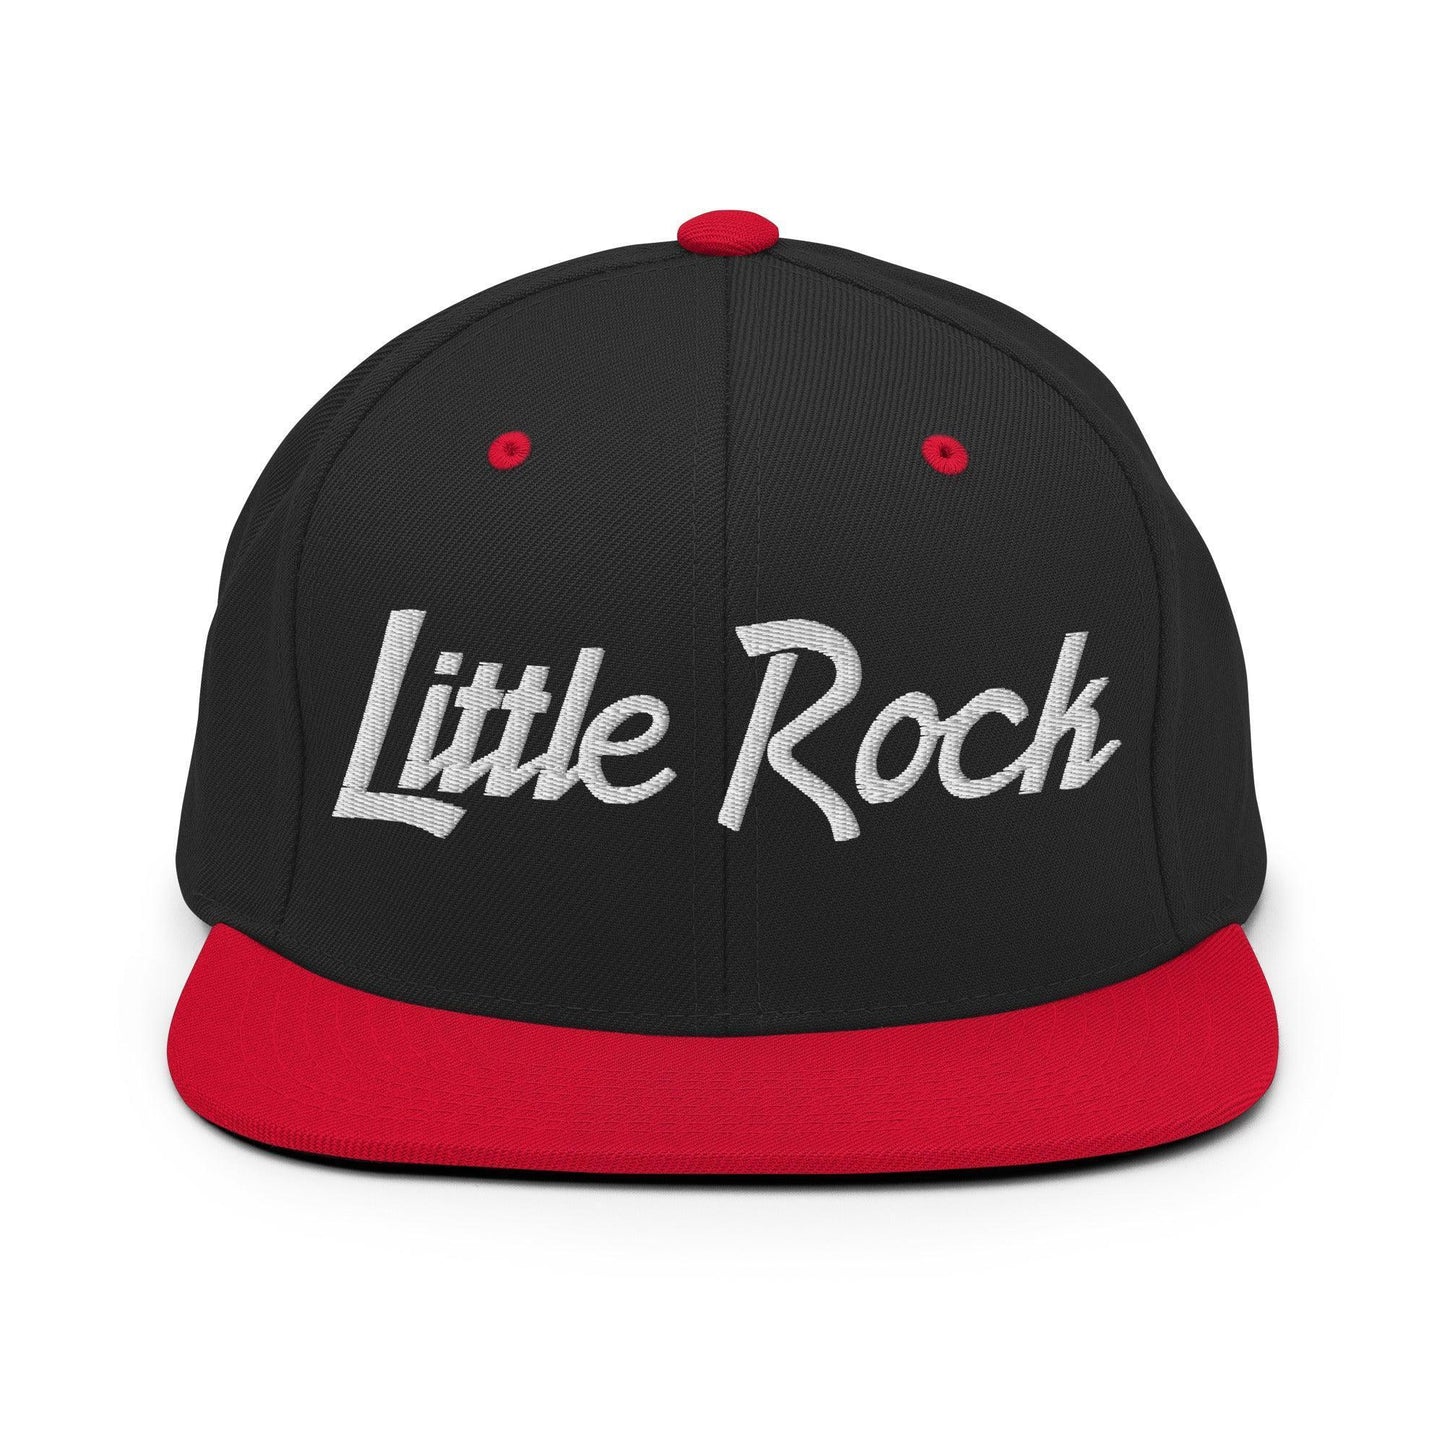 Little Rock Script Snapback Hat Black Red